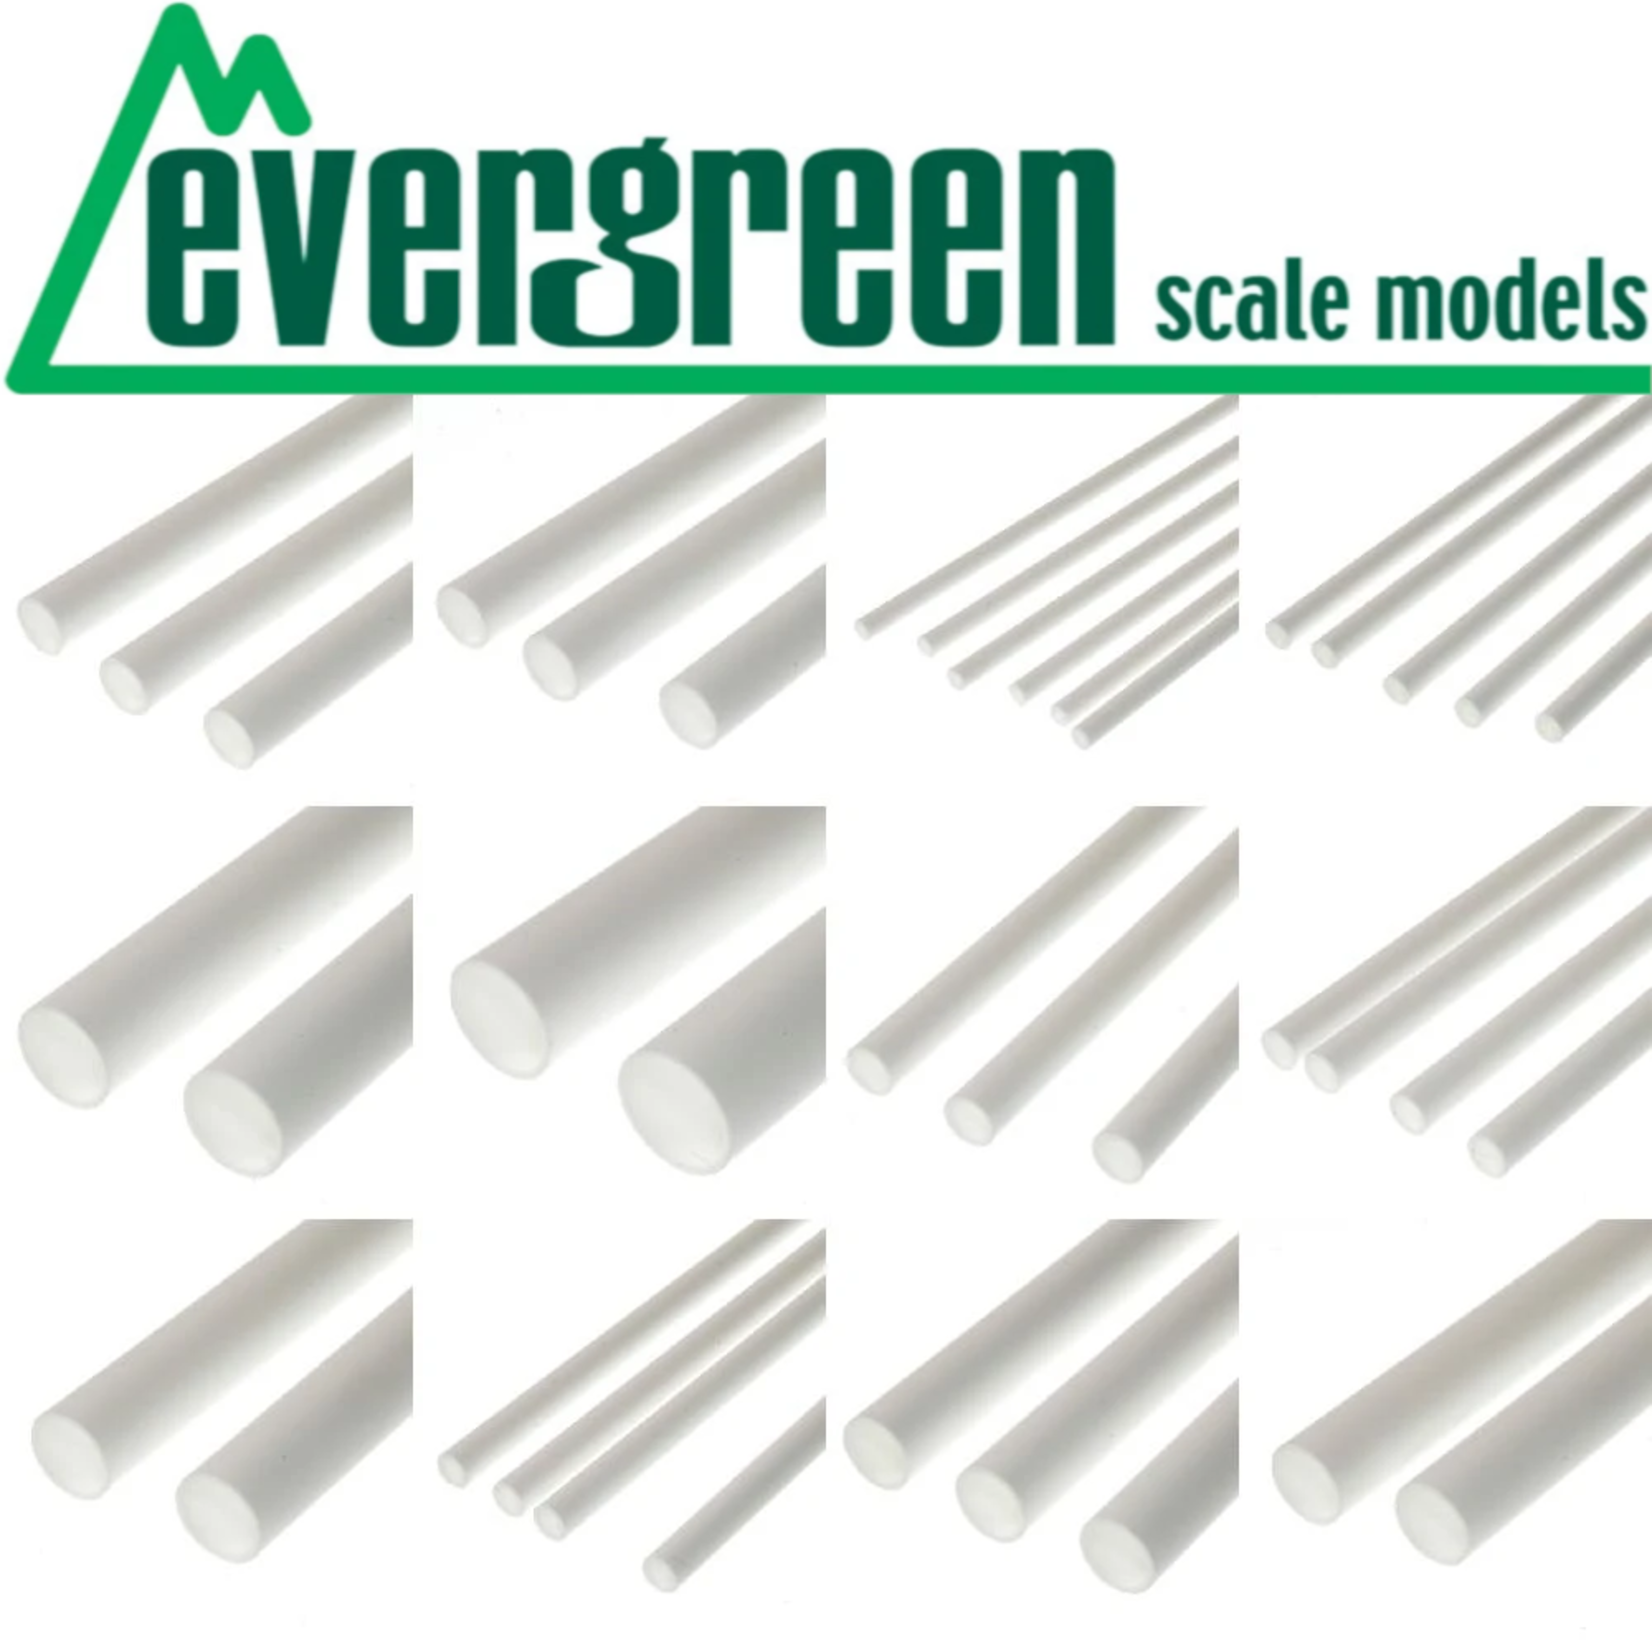 Evergreen Scale Models EVE2025 Styrene .020 V-Groove Siding Sheet